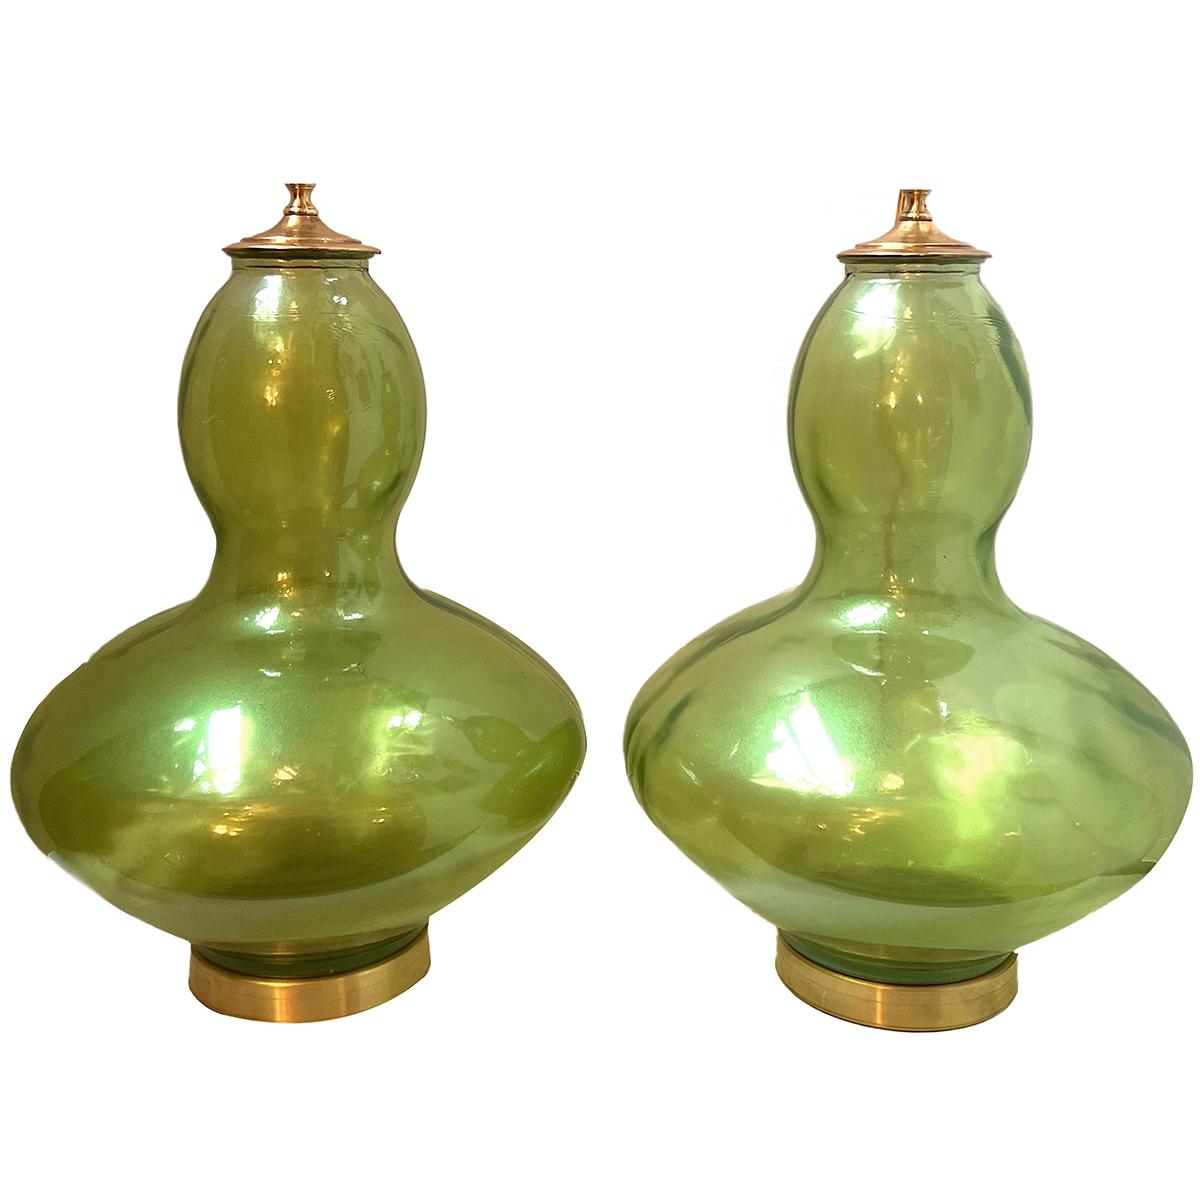 Paar Murano-Lampen aus geblasenem Glas mit vergoldeten Sockeln, circa 1960er Jahre.

Abmessungen:
Höhe des Körpers: 20.5